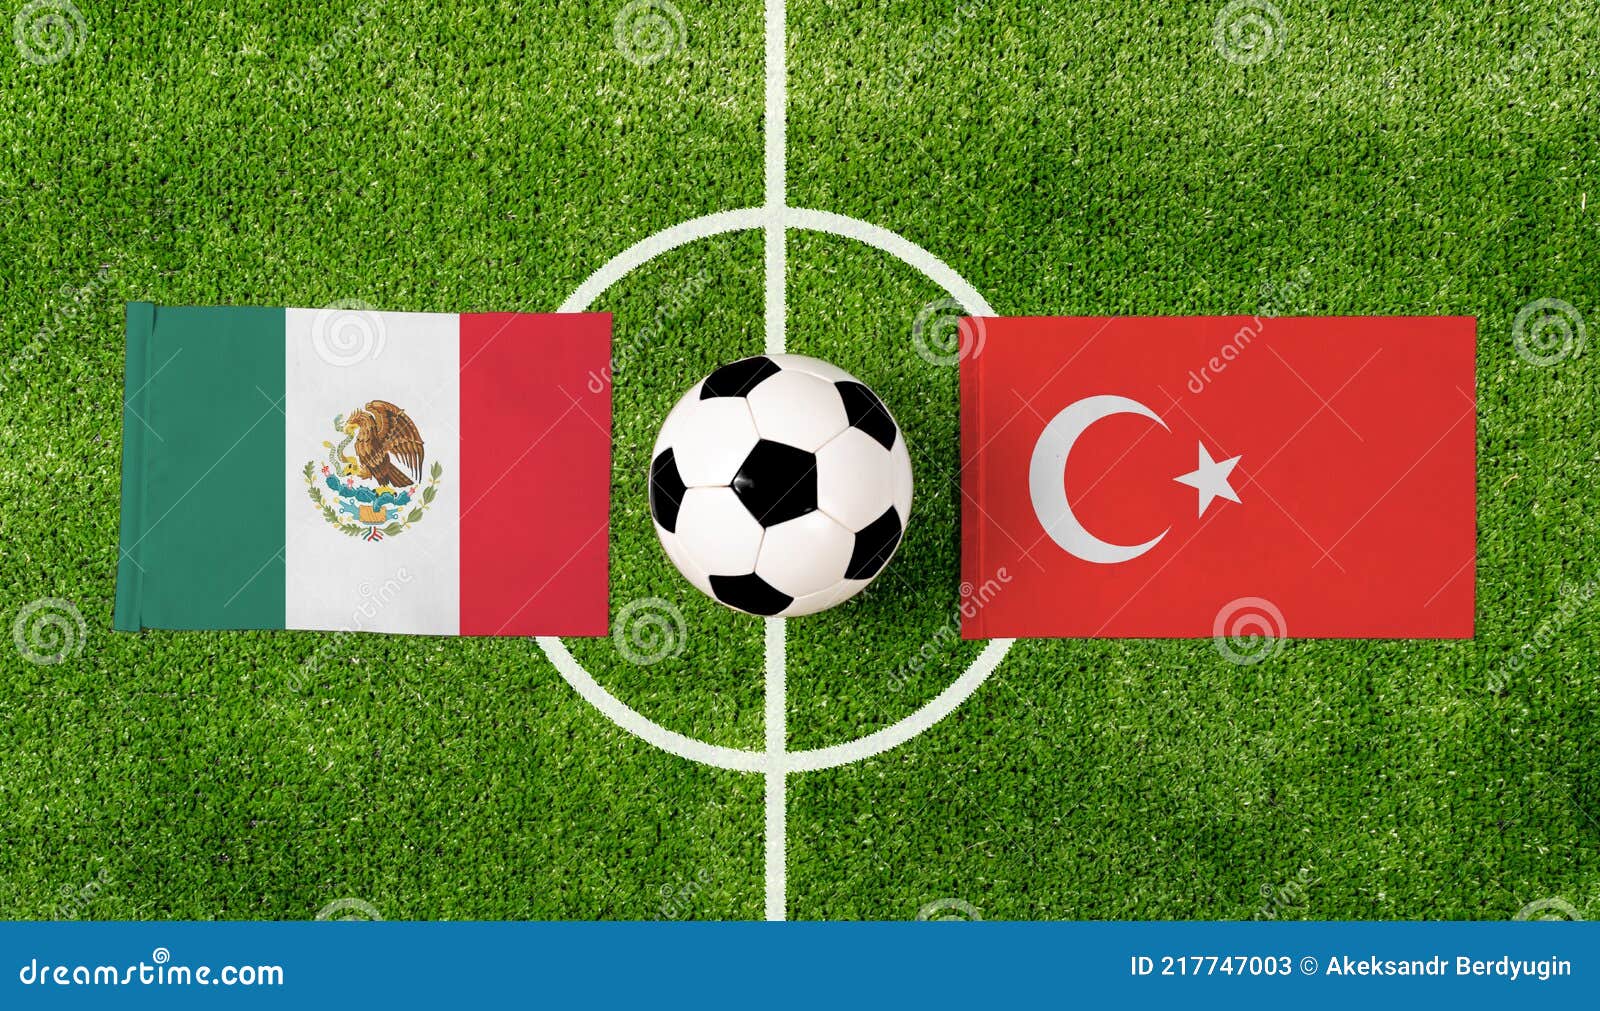 Bola De Vista Superior Com México Vs. Jogo De Bandeiras Da Turquia No Campo  De Futebol Verde Imagem de Stock - Imagem de naturalize, grama: 217747003